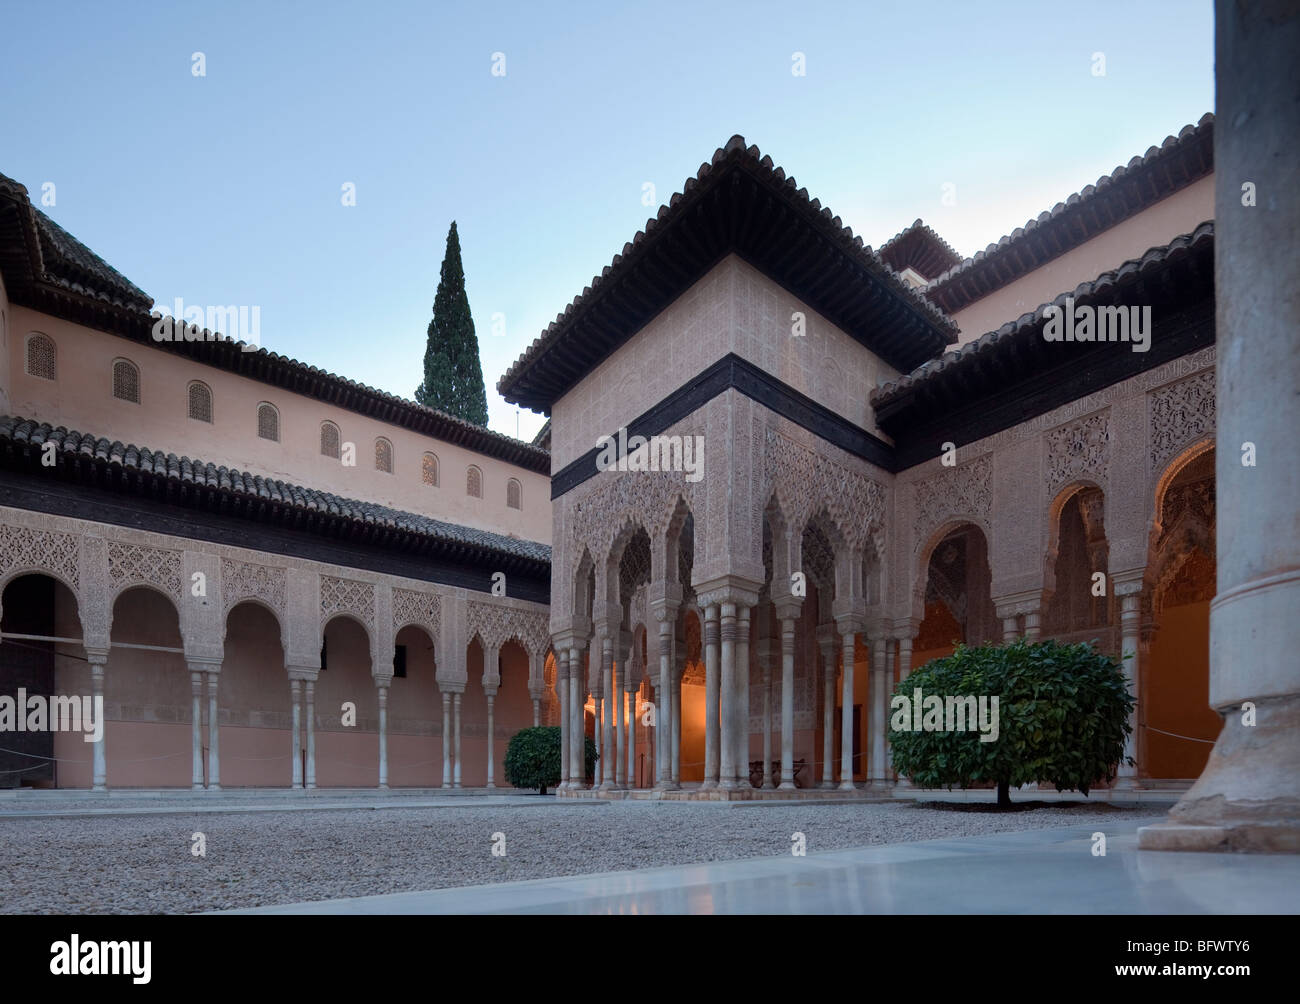 Pavilion et arches, Cour des Lions, à l'Alhambra, Grenade, Espagne Banque D'Images